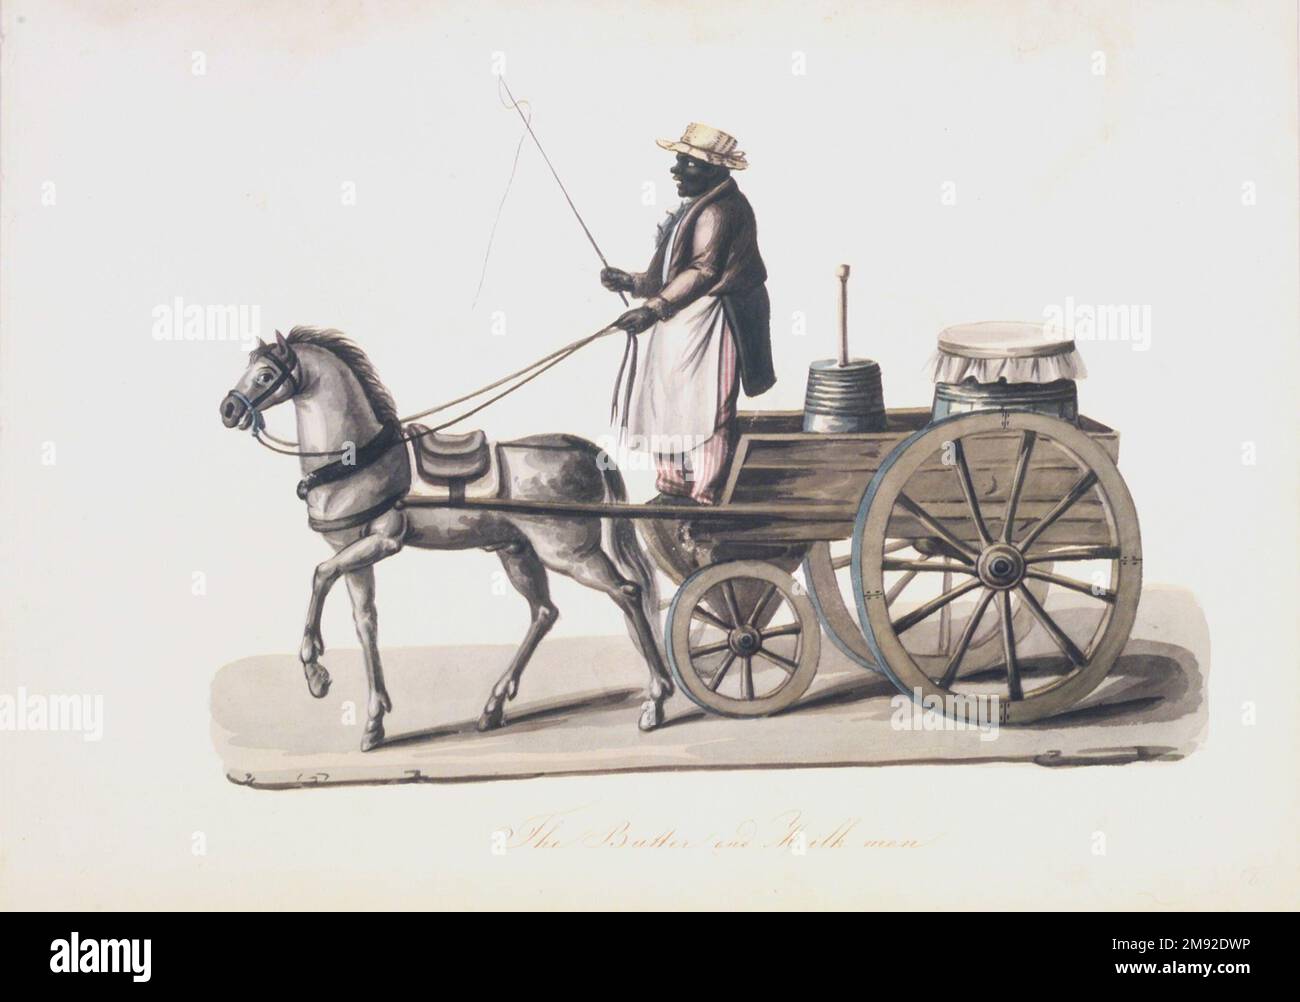 El hombre de la mantequilla y la leche Nicolino V. Calyo (1799-1884). El hombre de la mantequilla y la leche, 1840s. Acuarela sobre grafito sobre papel de tejido blanquecino, moderadamente grueso y con textura lisa, 10 1/2 x 14 3/4 pulg. (26,7 x 37,5 cm). El italiano Nicolino Calyo se estableció en la ciudad de Nueva York en la década de 1830s, donde hizo una serie de imágenes (incluida esta) de comerciantes locales. Los afroamericanos desempeñaron un papel crucial en las economías de Nueva York y Brooklyn, trabajando típicamente como vendedores ambulantes, barridos de chimeneas, sirvientes domésticos, granjeros y trabajadores portuarios. Antes de 1827, cuando la esclavitud fue abolida en New York Stat Foto de stock